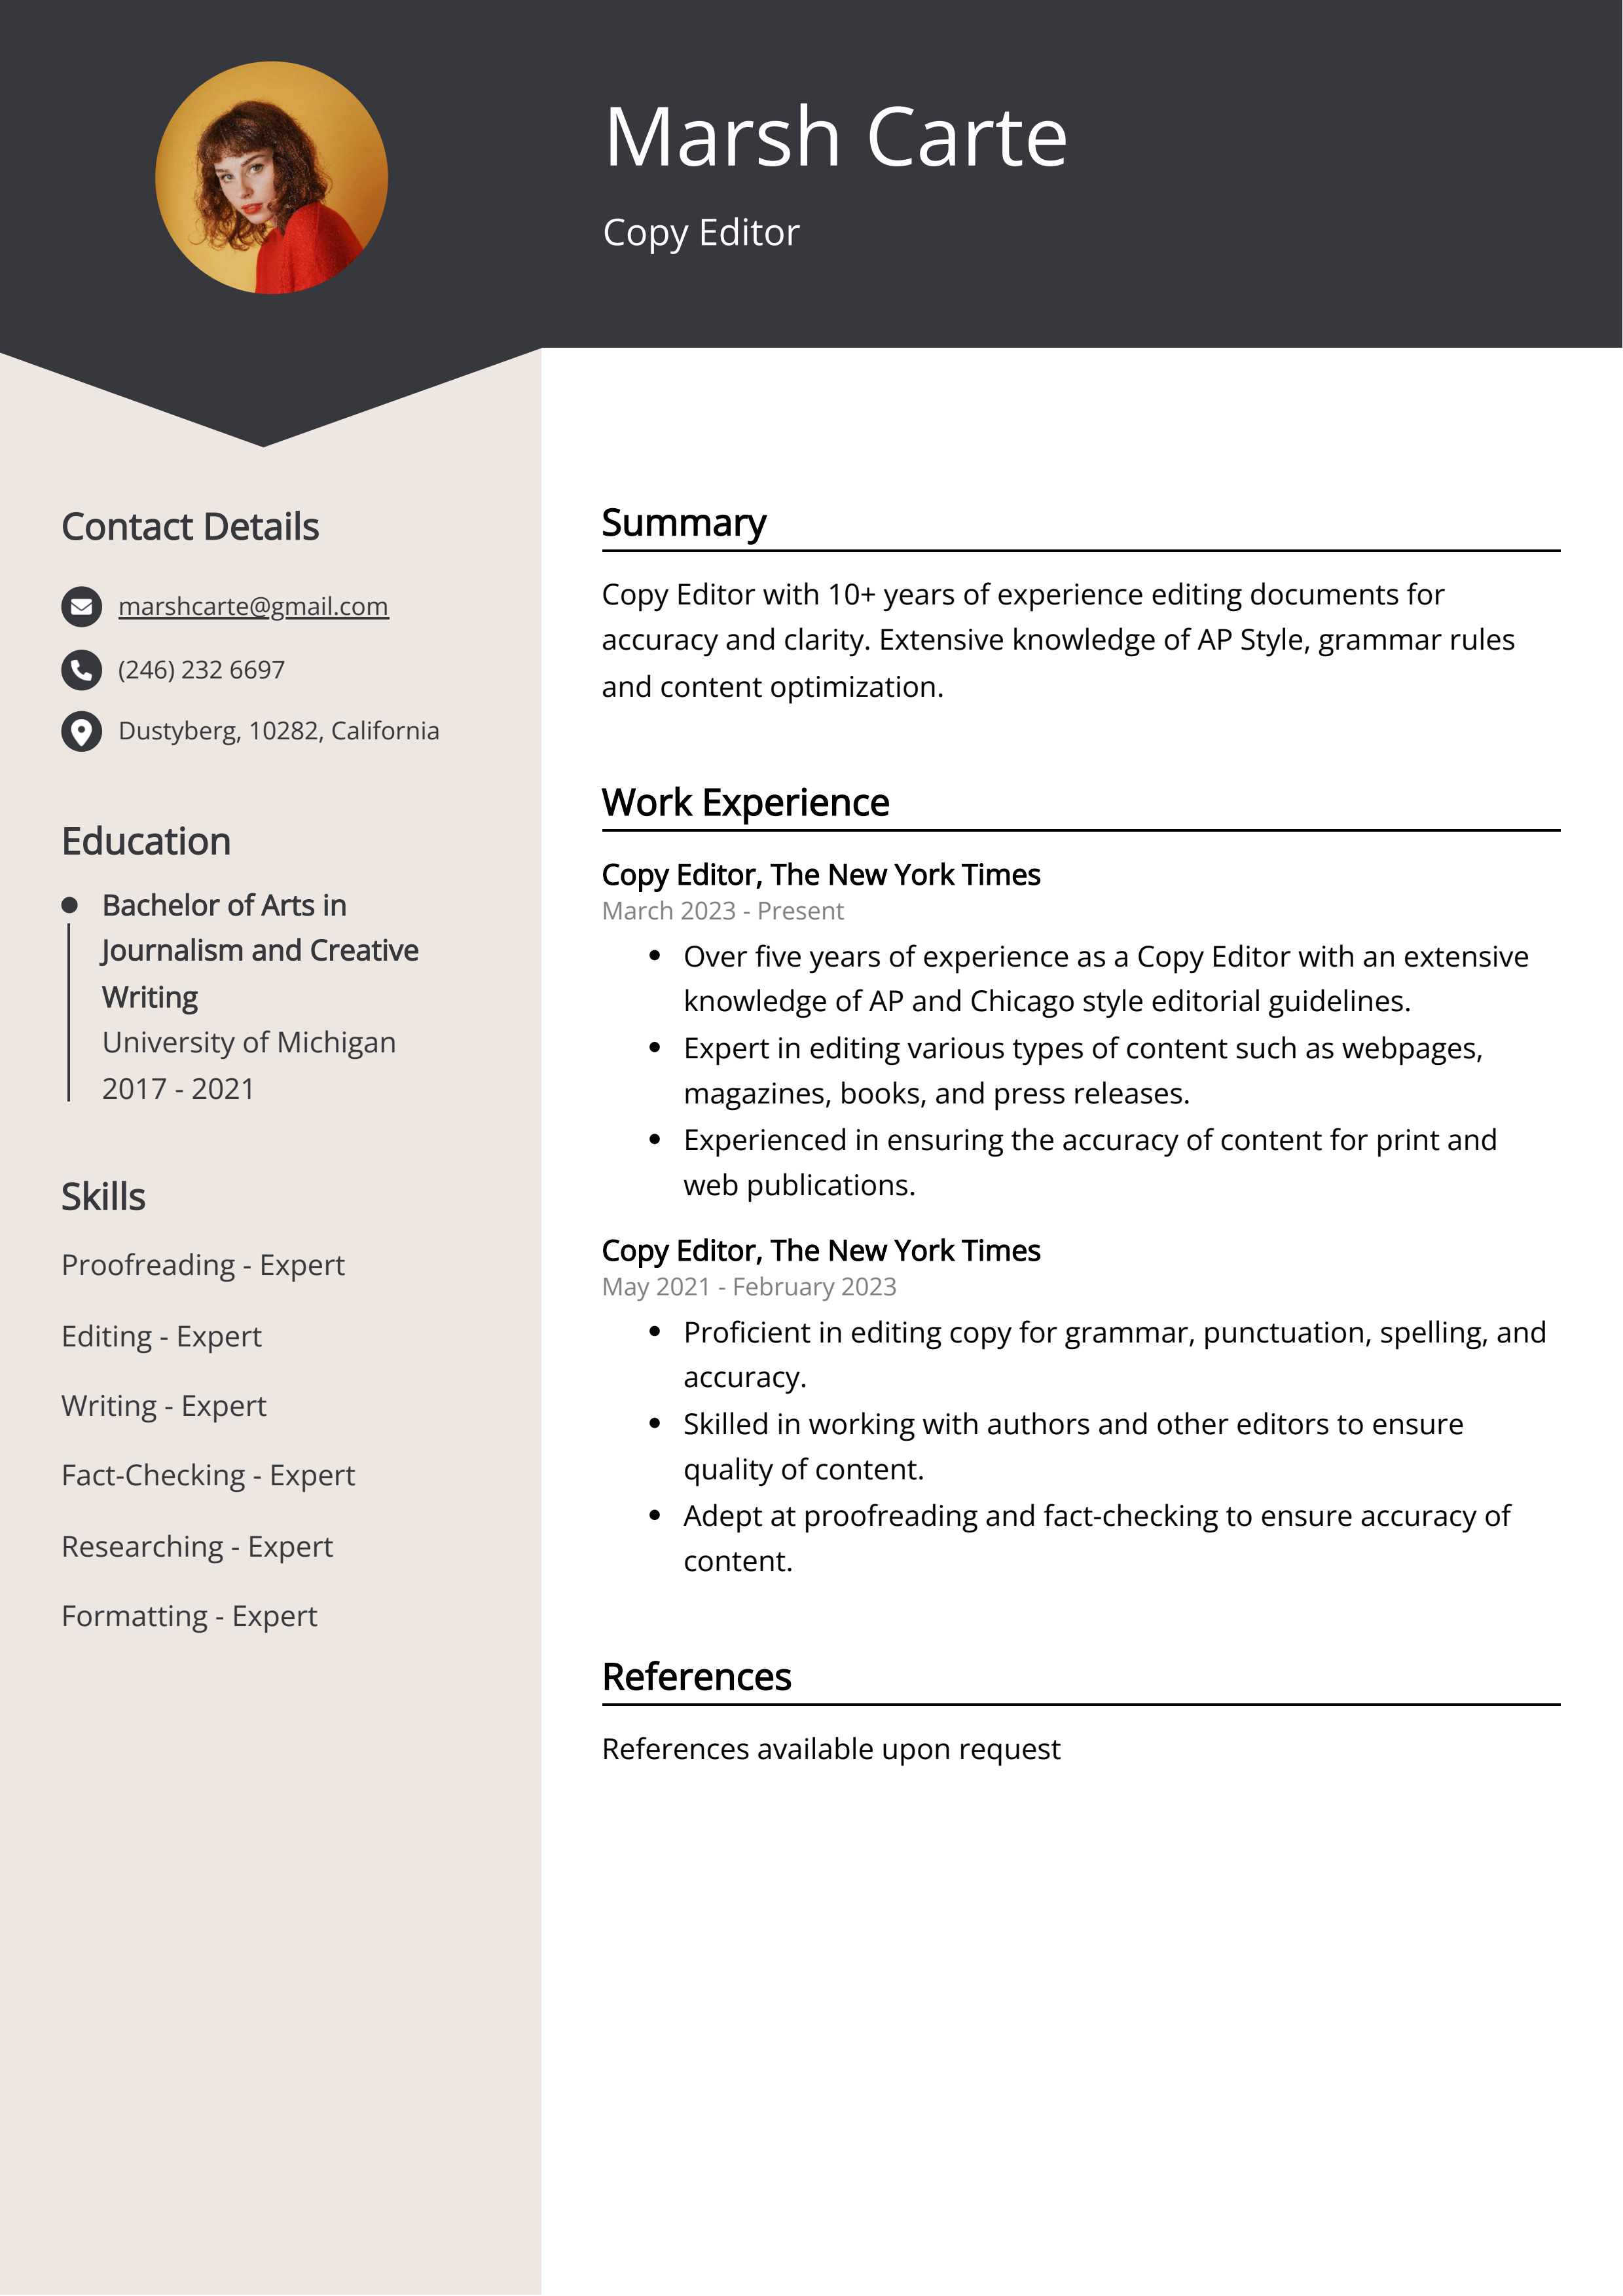 Copy Editor CV Example